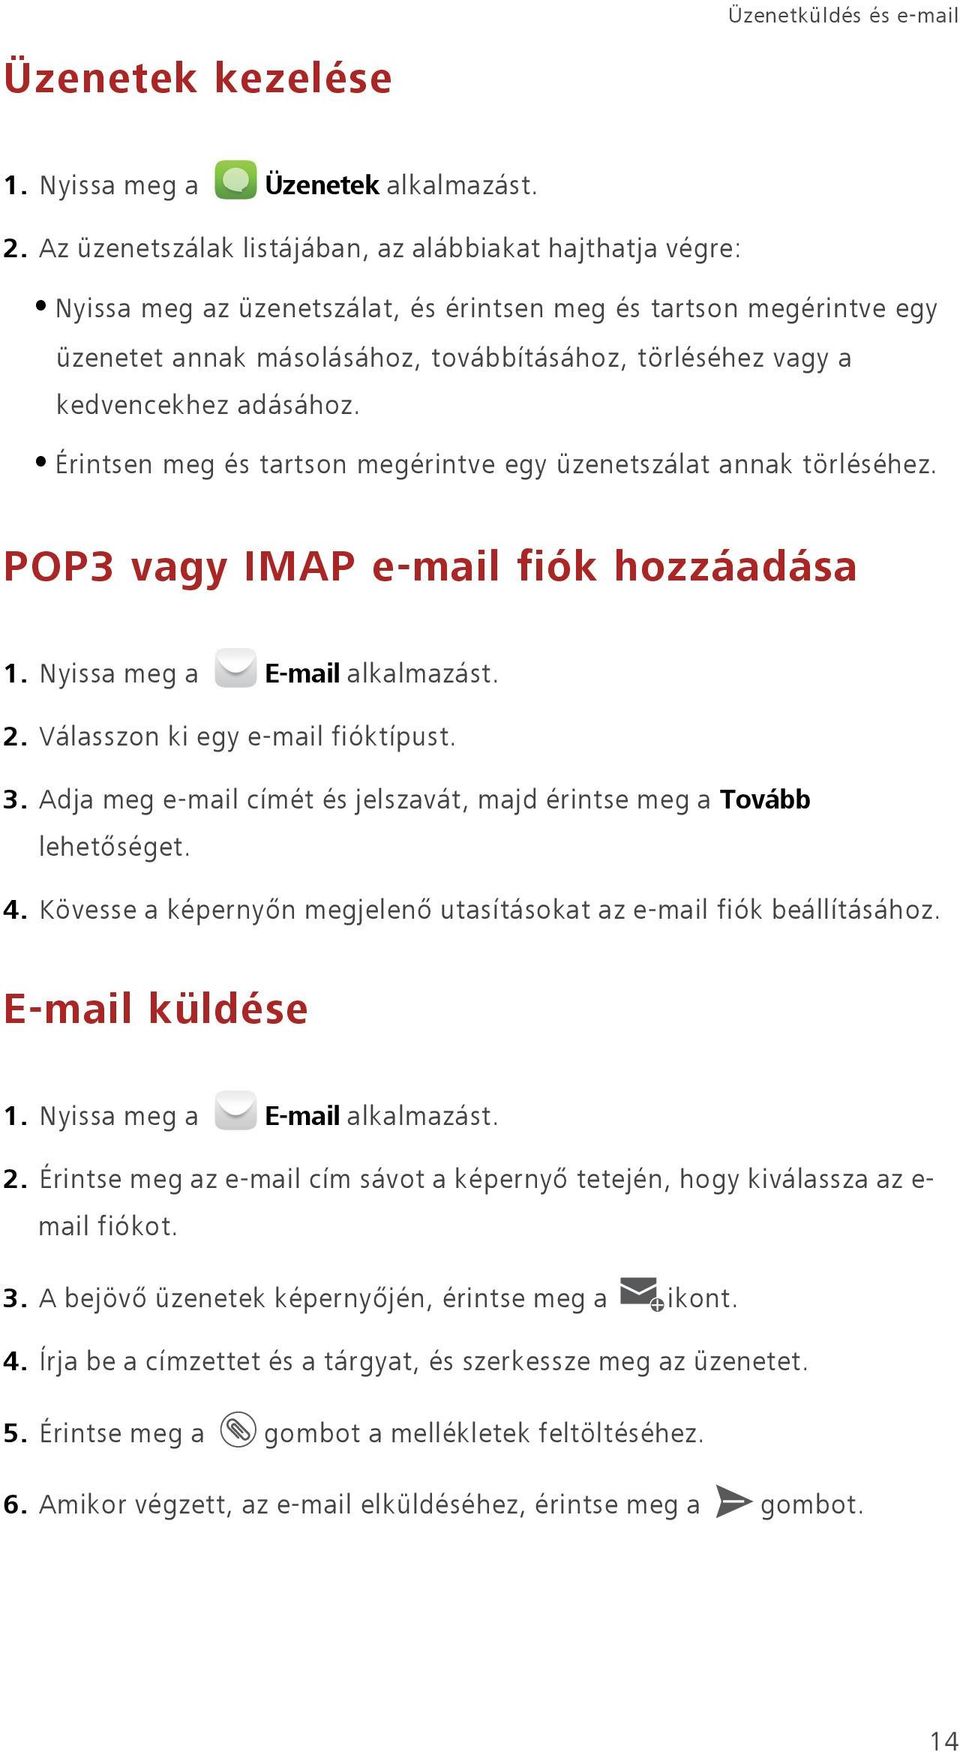 kedvencekhez adásához. Érintsen meg és tartson megérintve egy üzenetszálat annak törléséhez. POP3 vagy IMAP e-mail fiók hozzáadása 1. Nyissa meg a E-mail alkalmazást. 2.